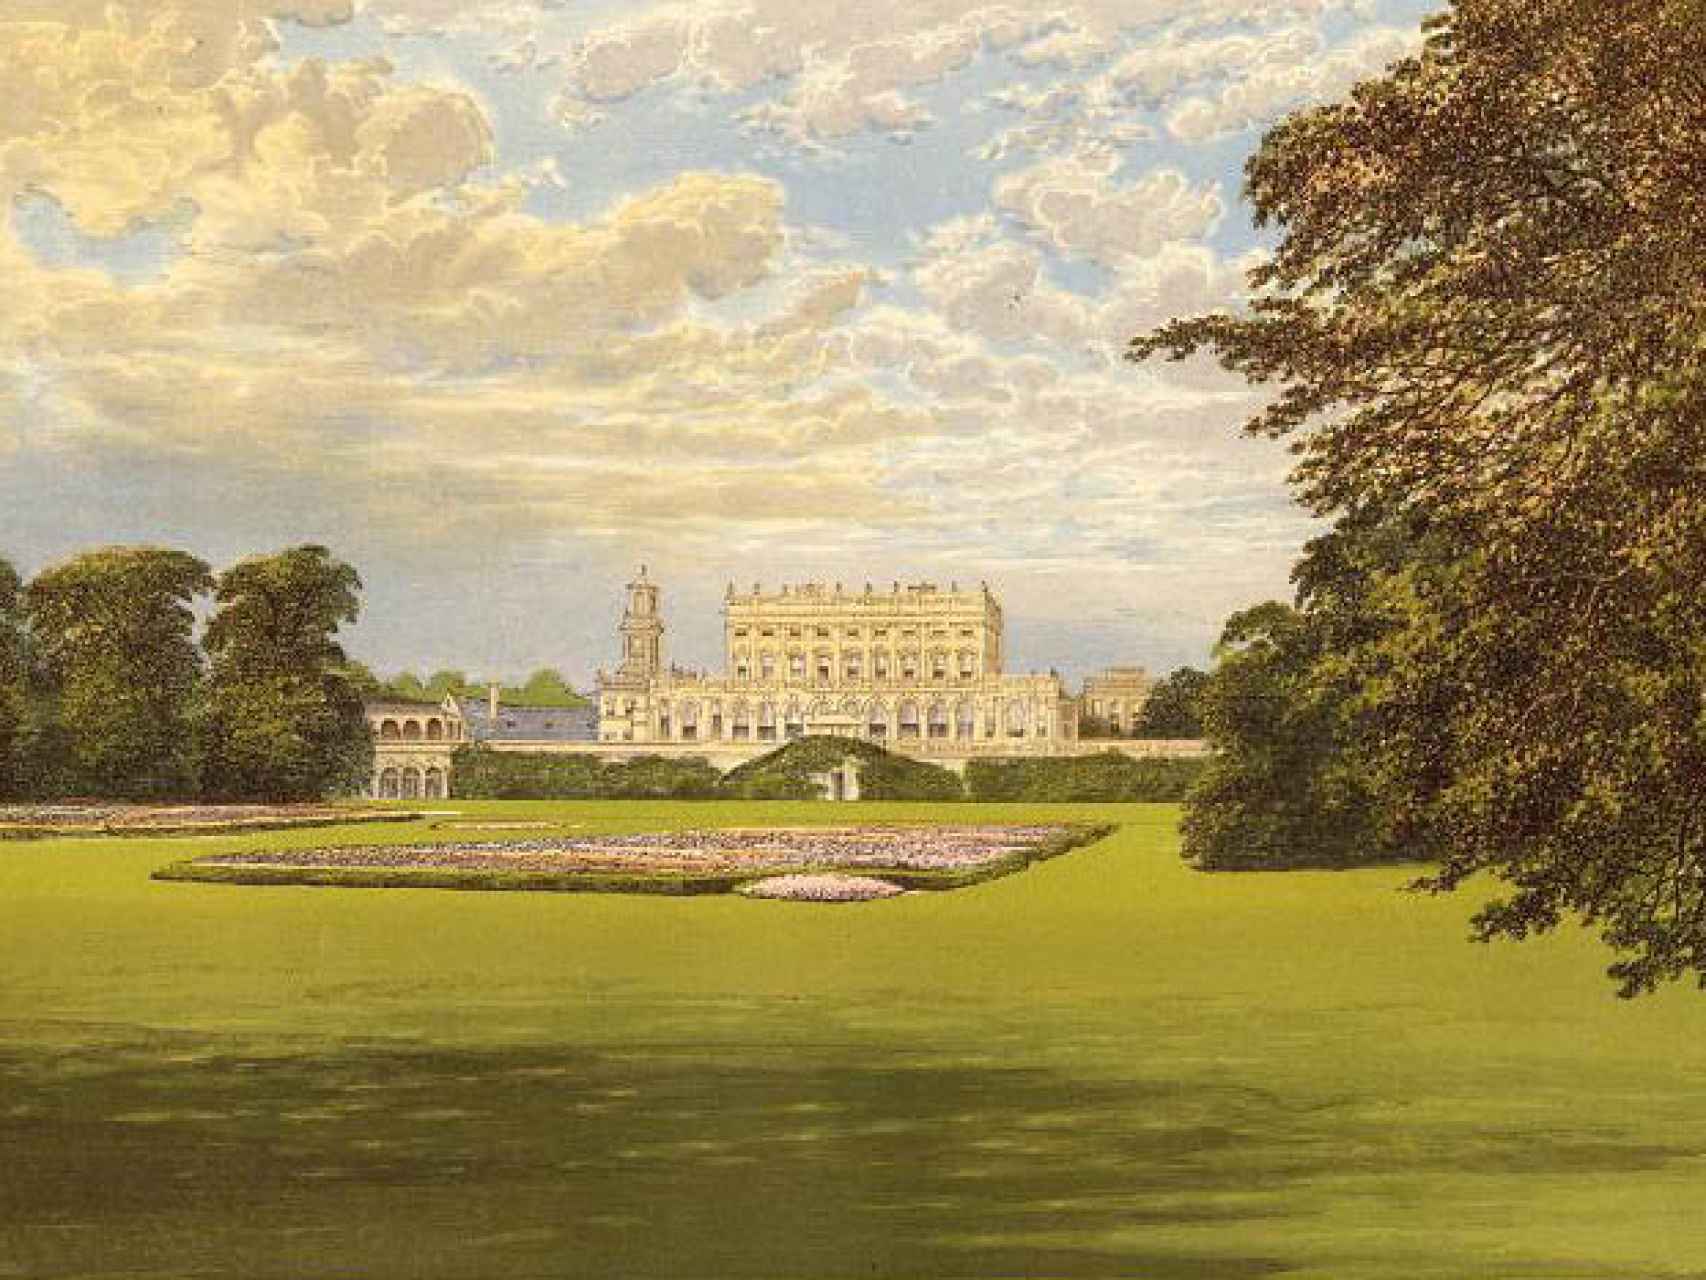 Cliveden, la fantástica propiedad del siglo XVII comprada por Astor, según un cuadro de 1851.